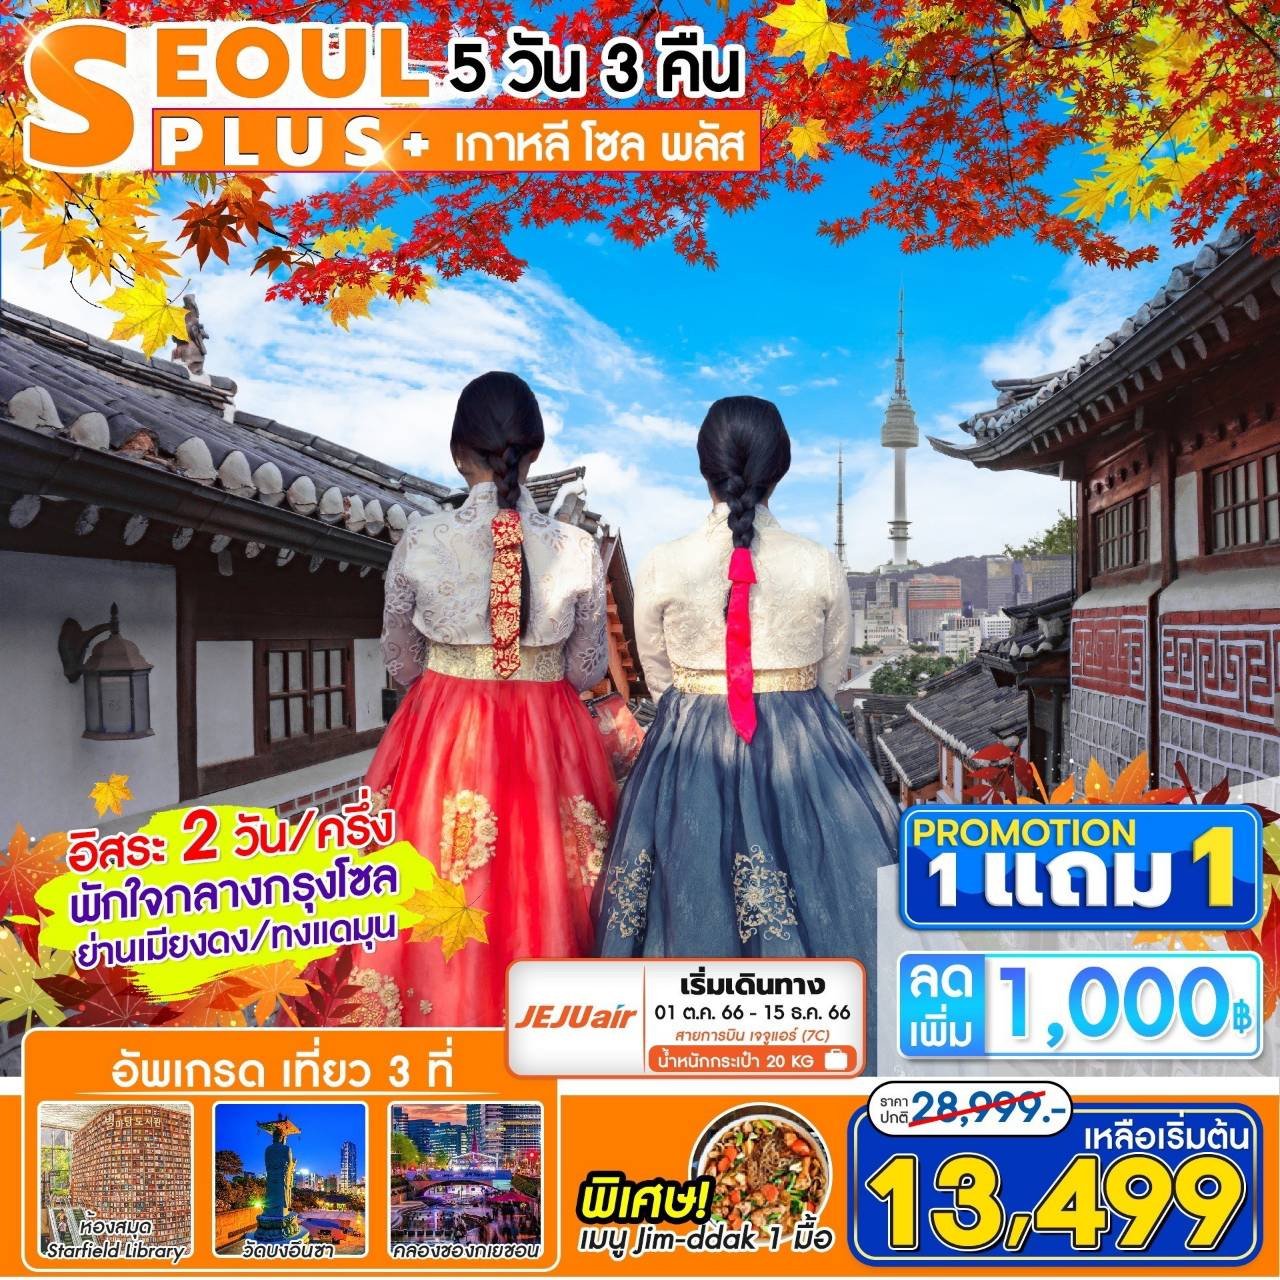 (โปรโมชั่น!!! ซื้อ 1 แถม 1) ทัวร์เกาหลี โซล Seoul Plus+ 5 วัน 3 คืน